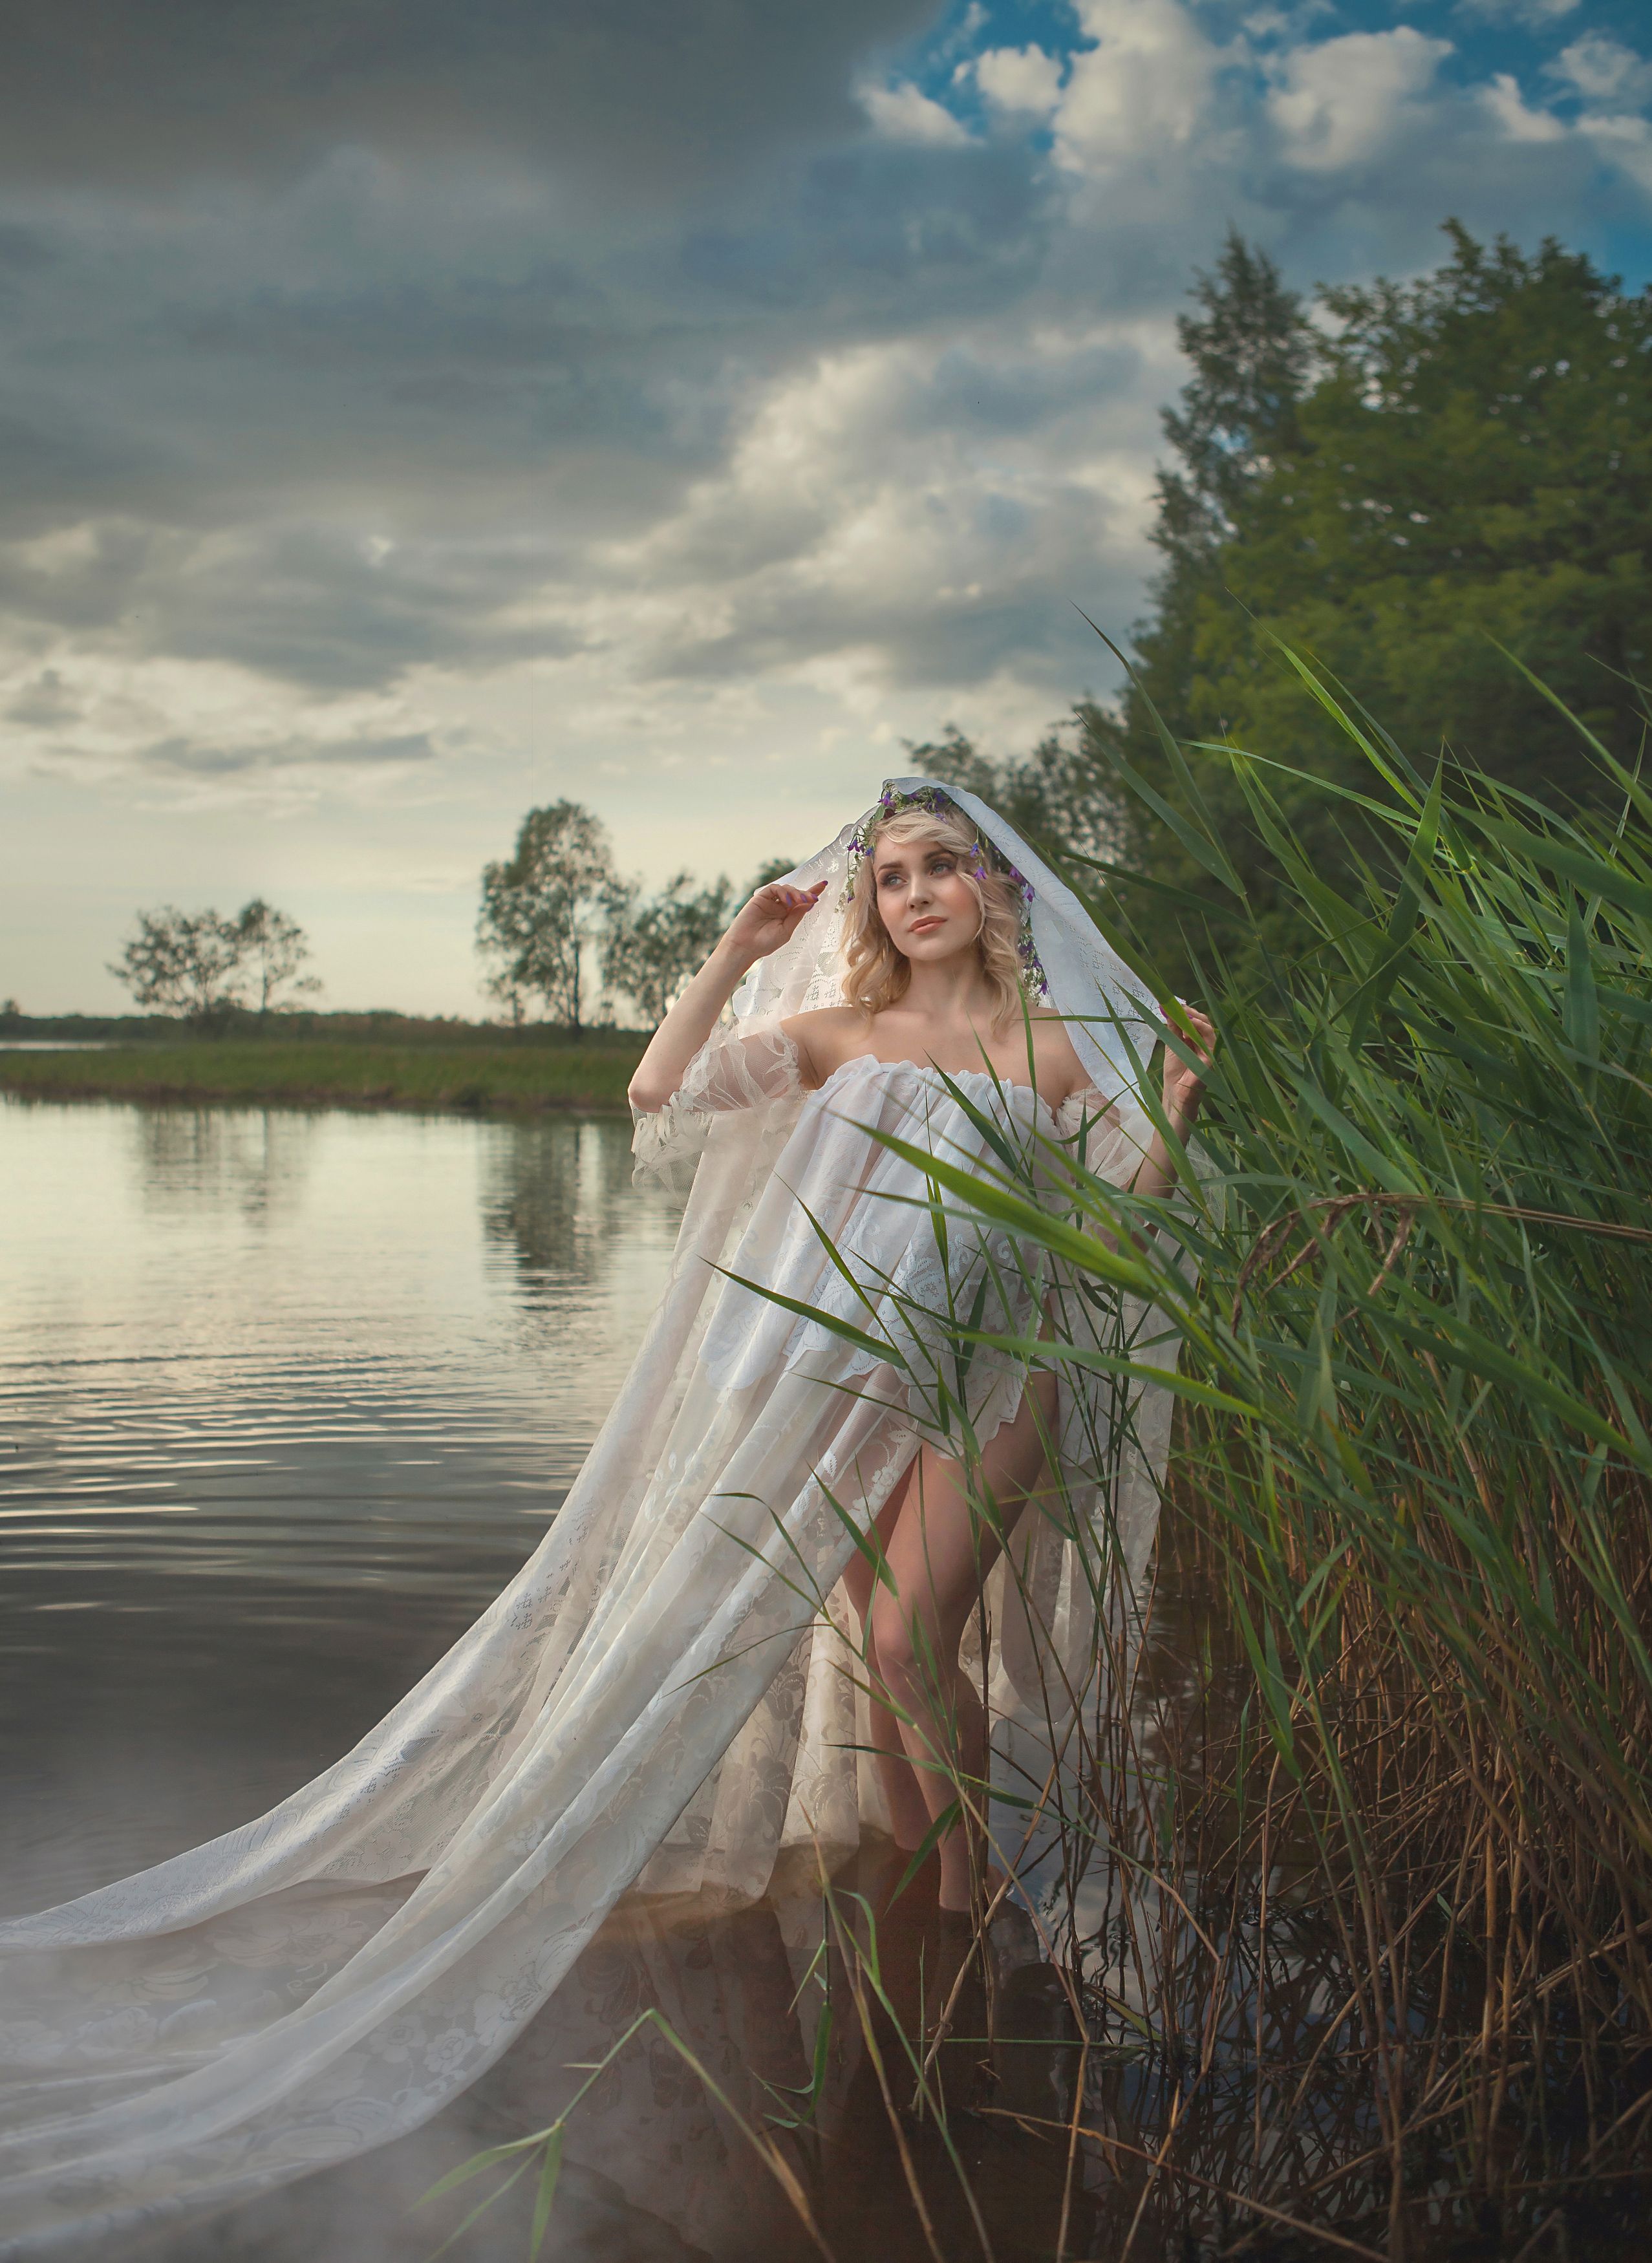 река девушка красота любовь природа искусство фотография покой радость лодка облака вода небо, Татьяна Шепелева